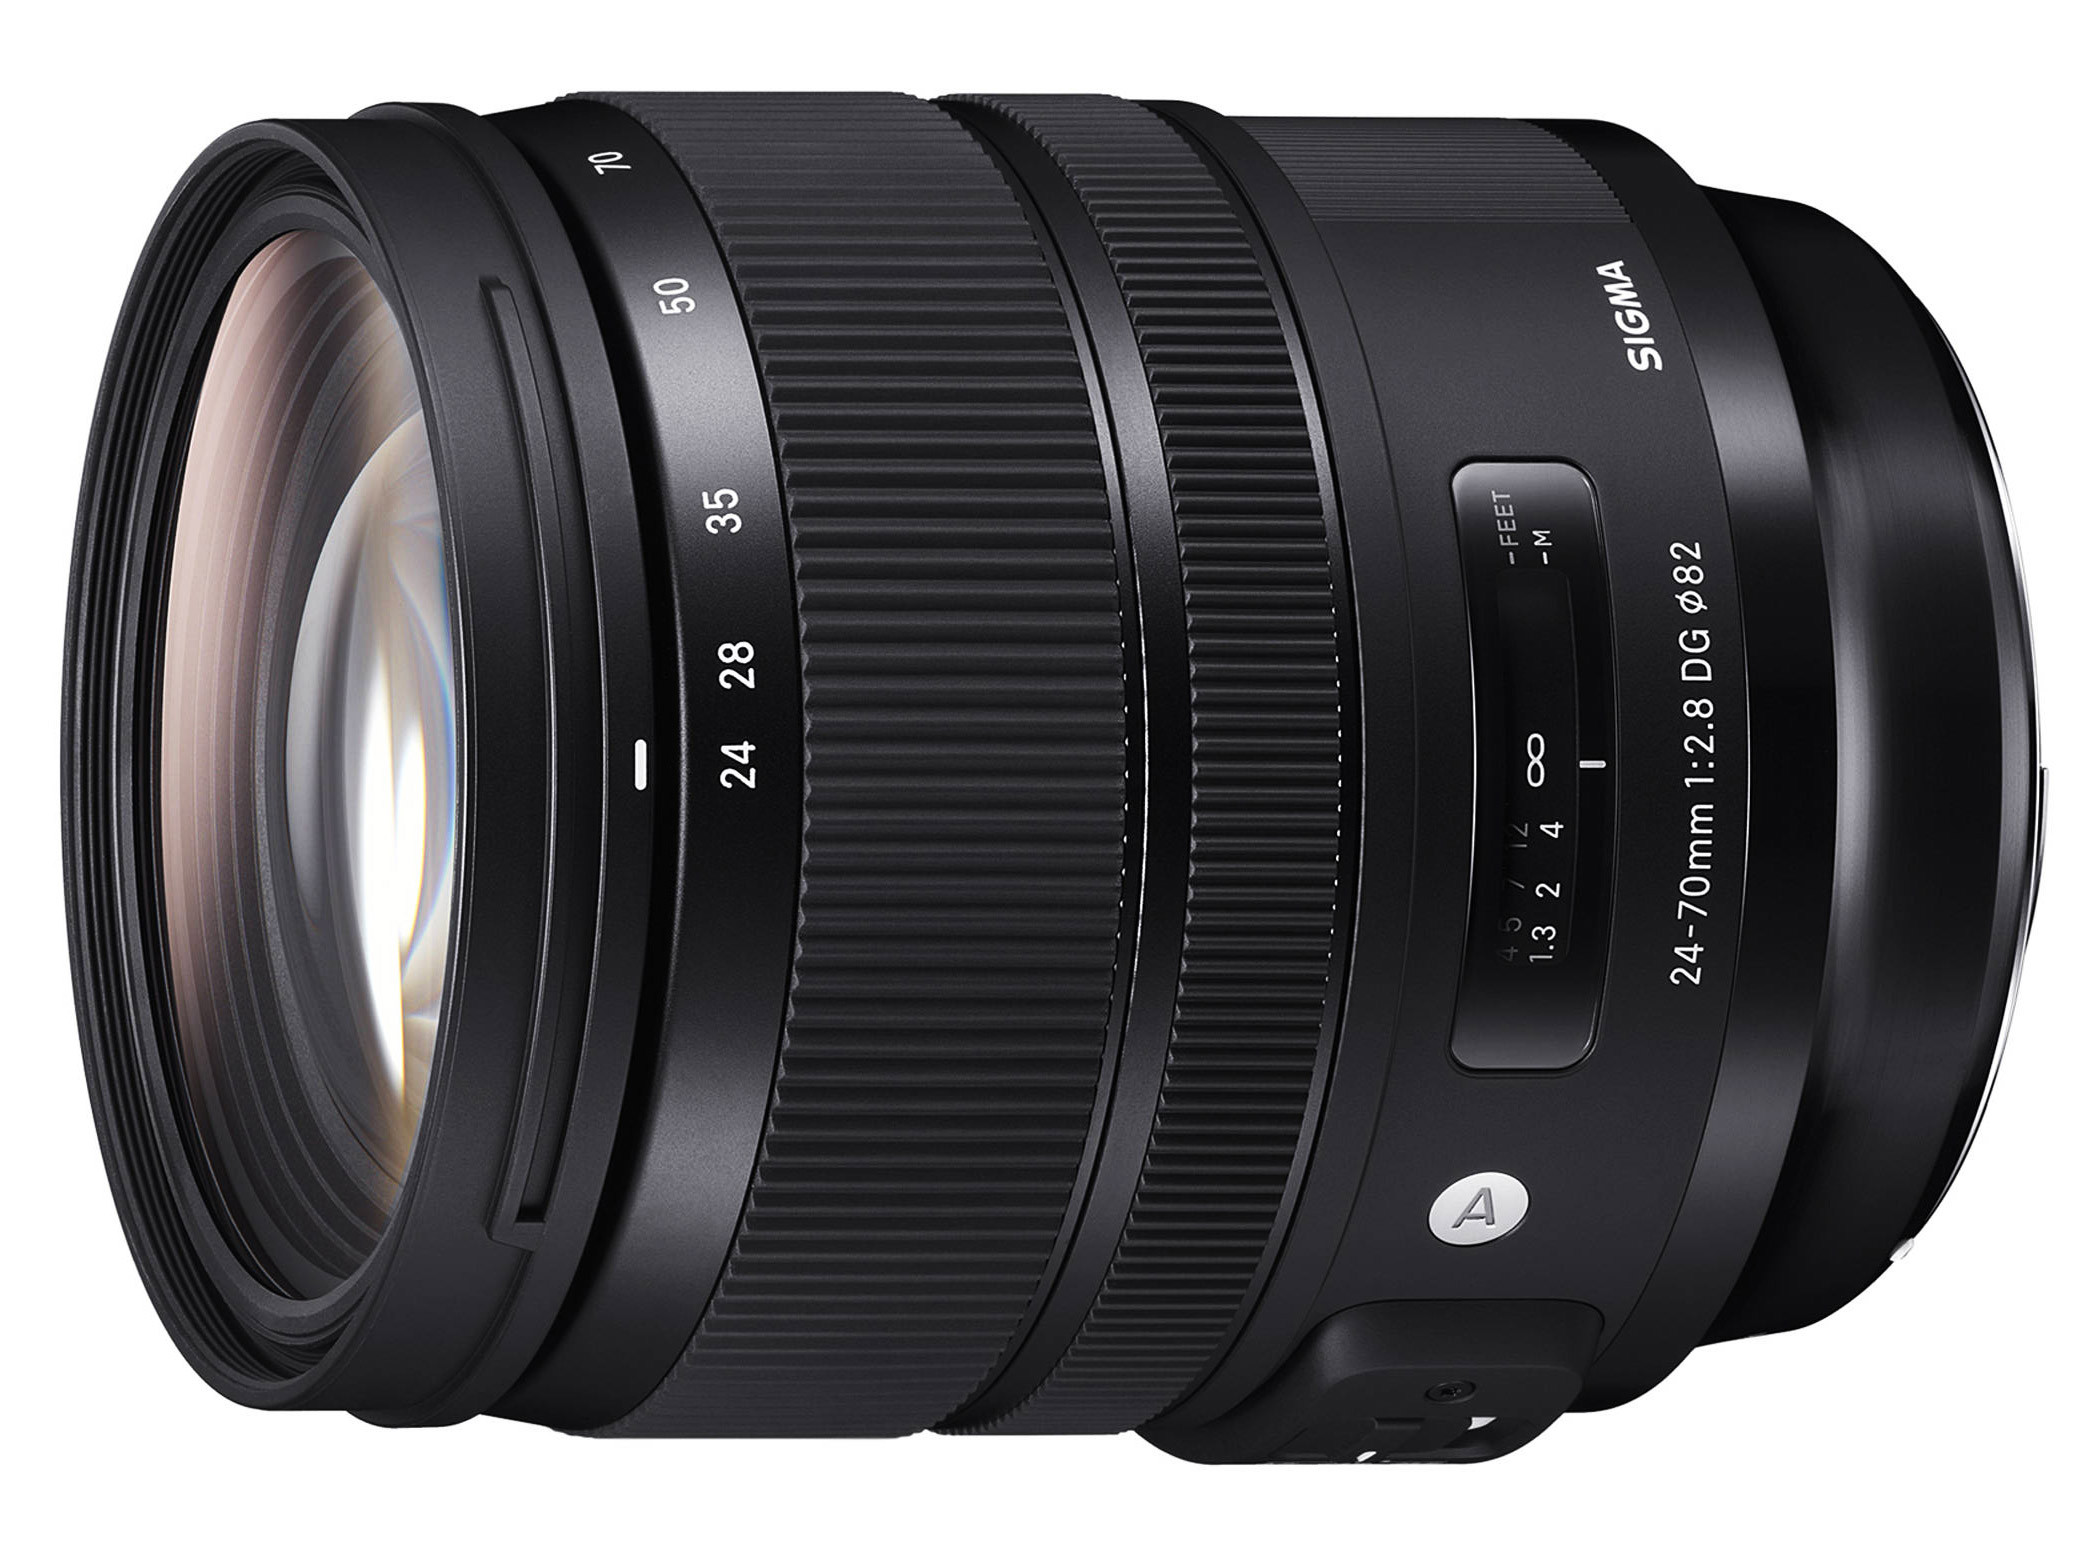 Obiettivo Sigma 24-70mm f/2.8 DG OS HSM Art (Nikon)